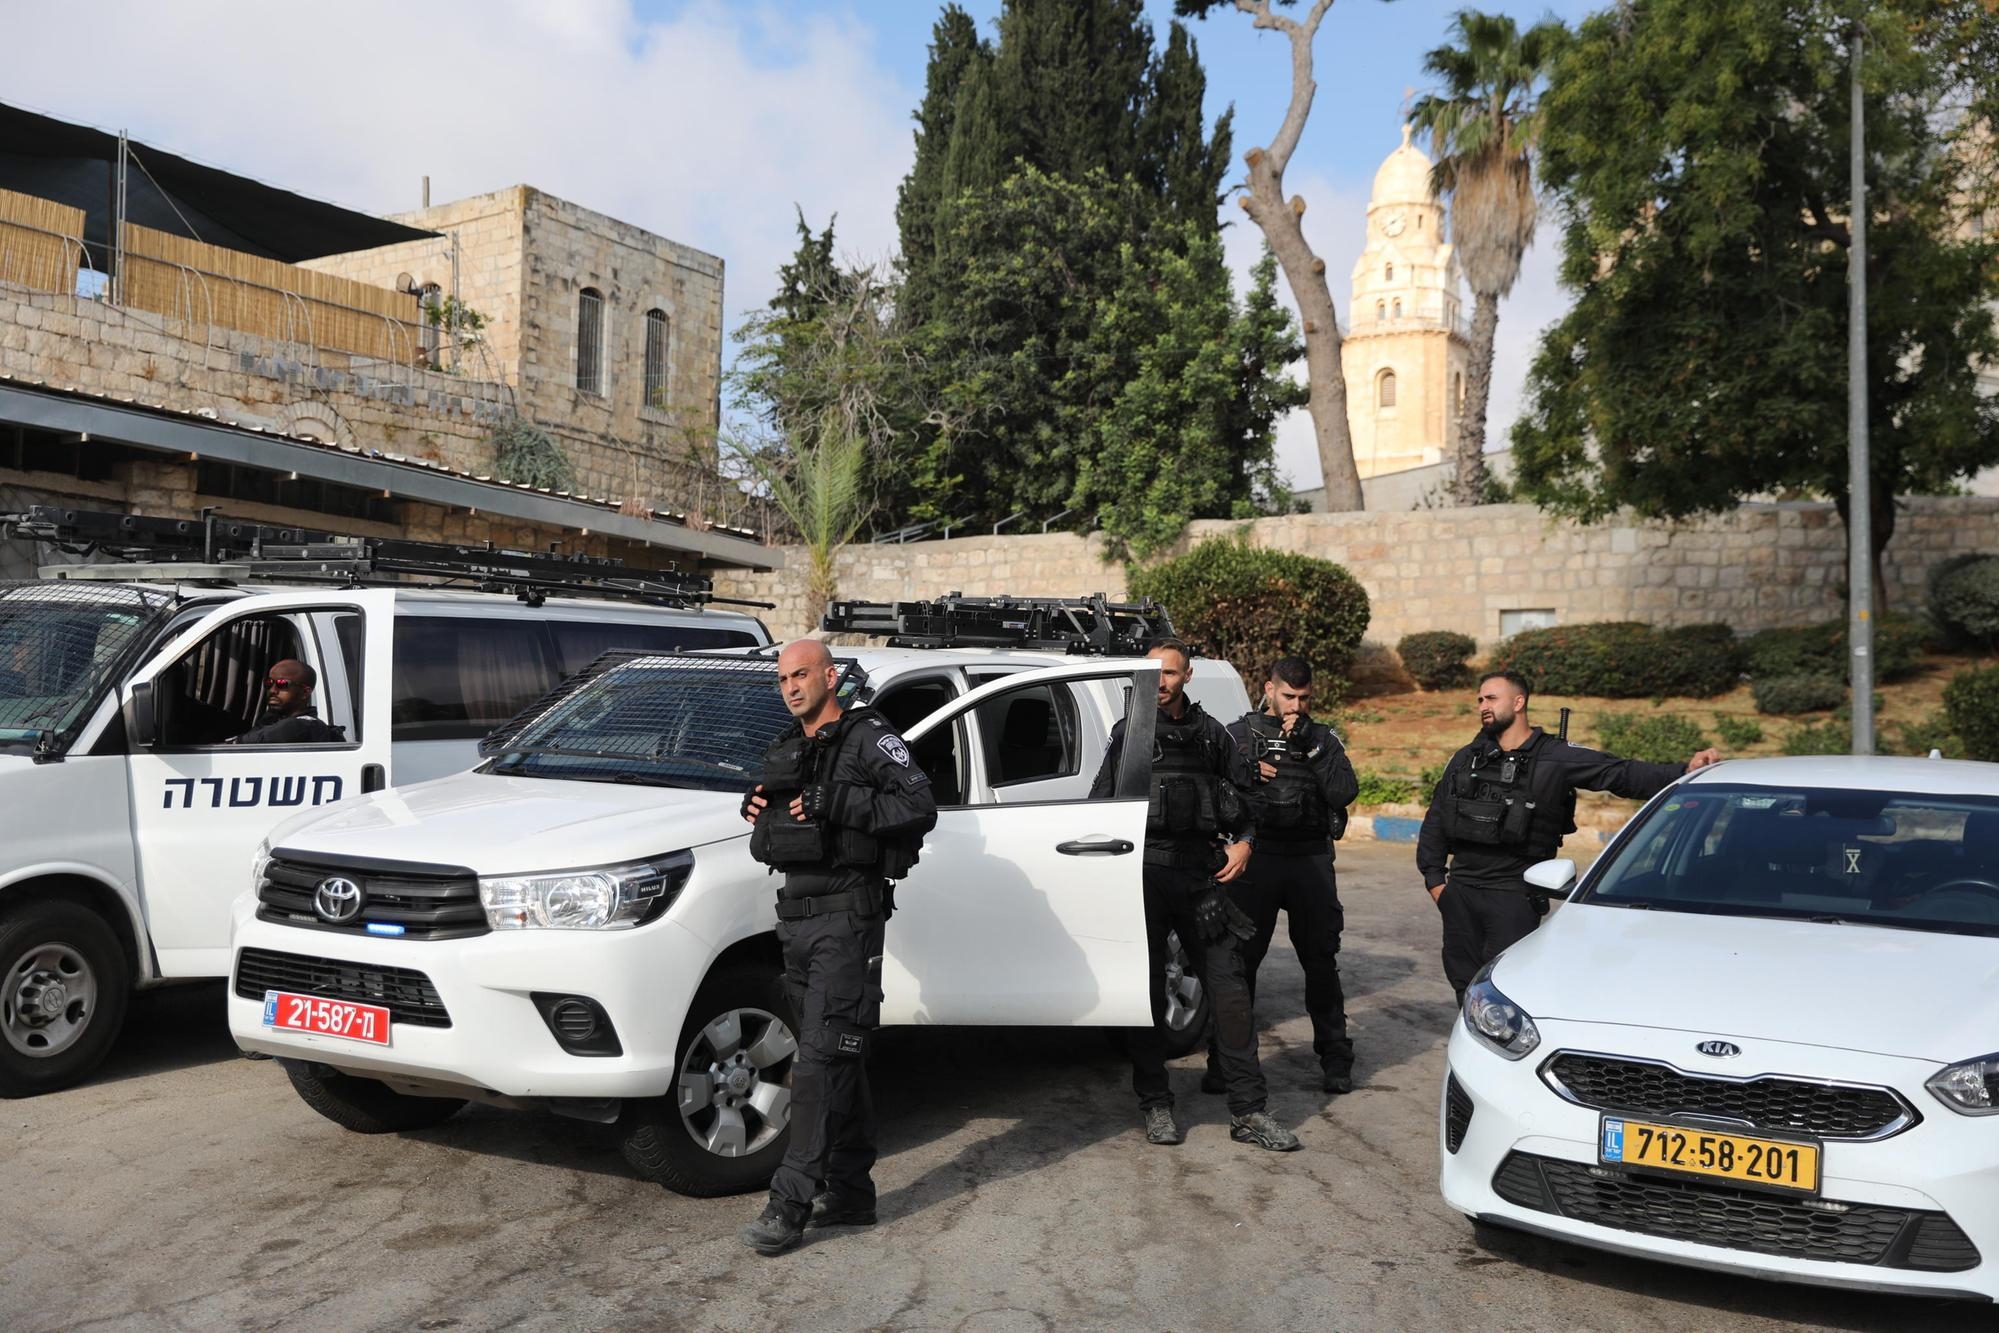 Gerusalemme, attacco a colpi d’arma da fuoco contro un bus: almeno 7 feriti